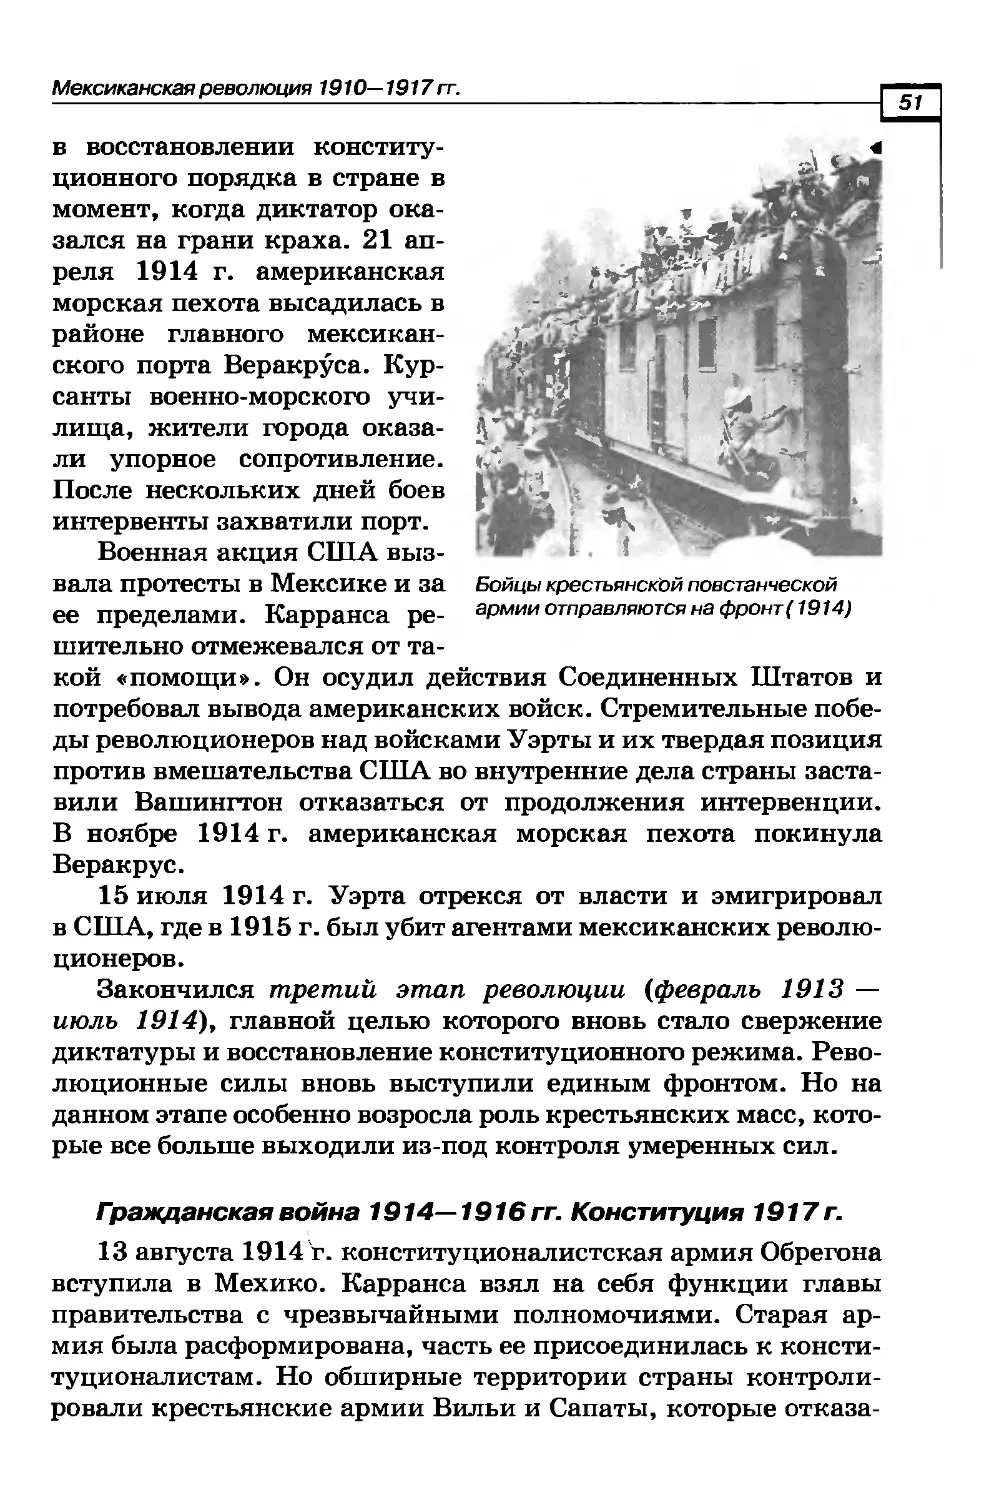 Гражданская война 1914-1916 гг. Конституция 1917 г